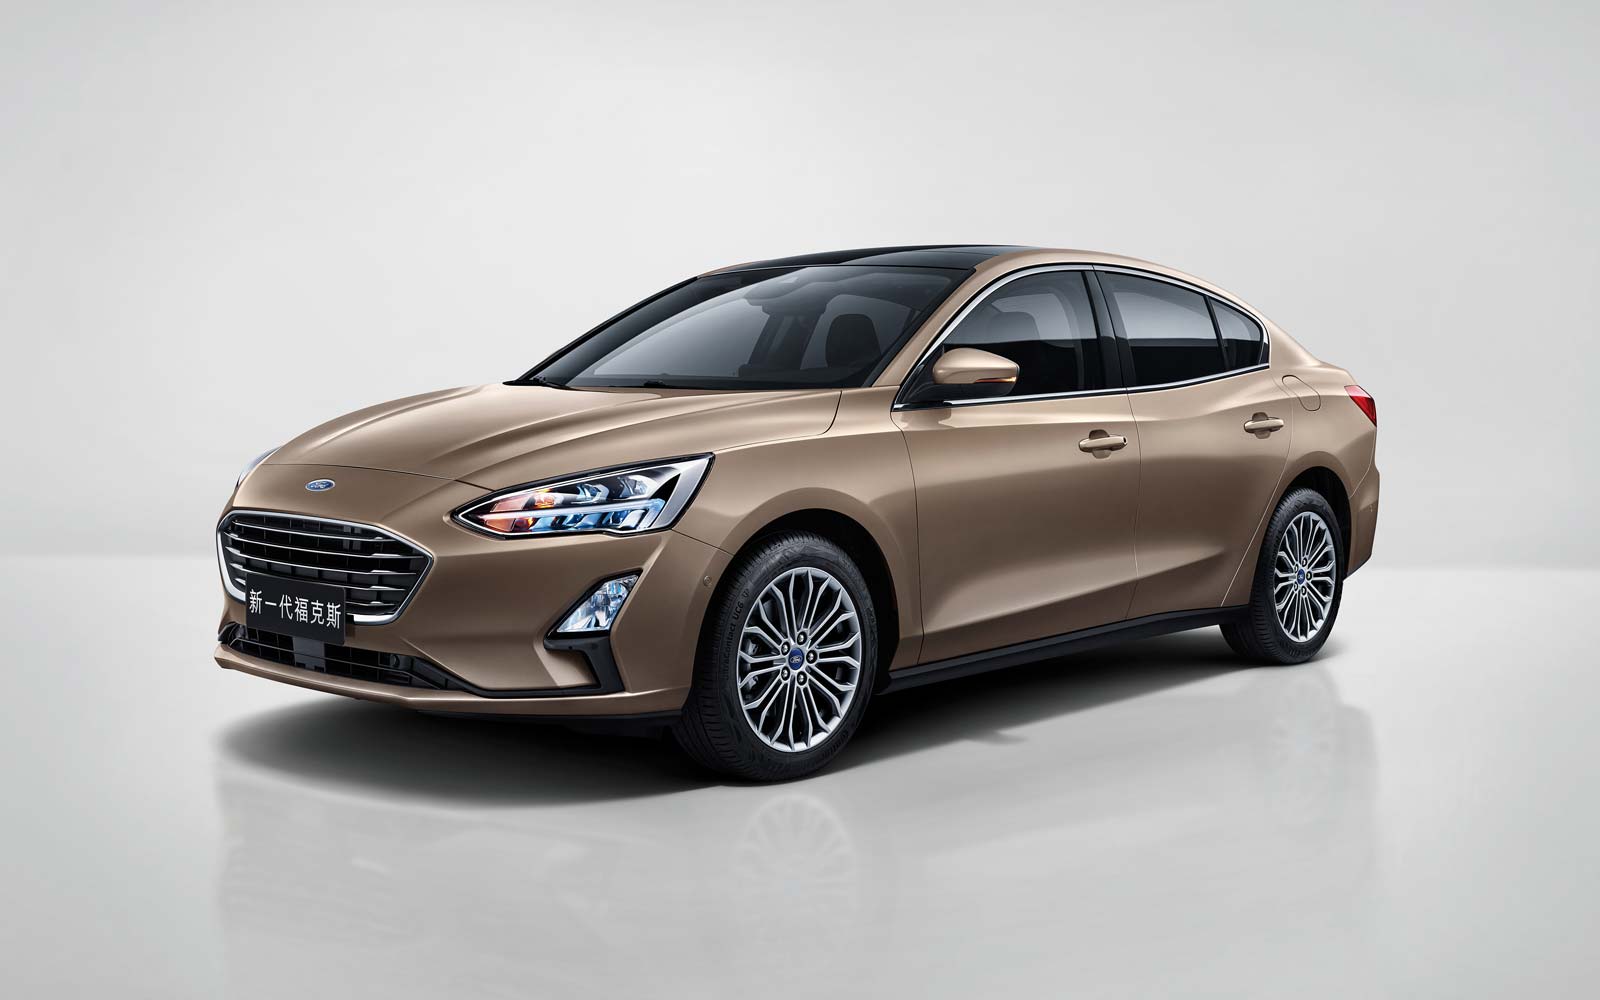 2019-4th-generation-Ford-Focus-4-door-sedan-Asia